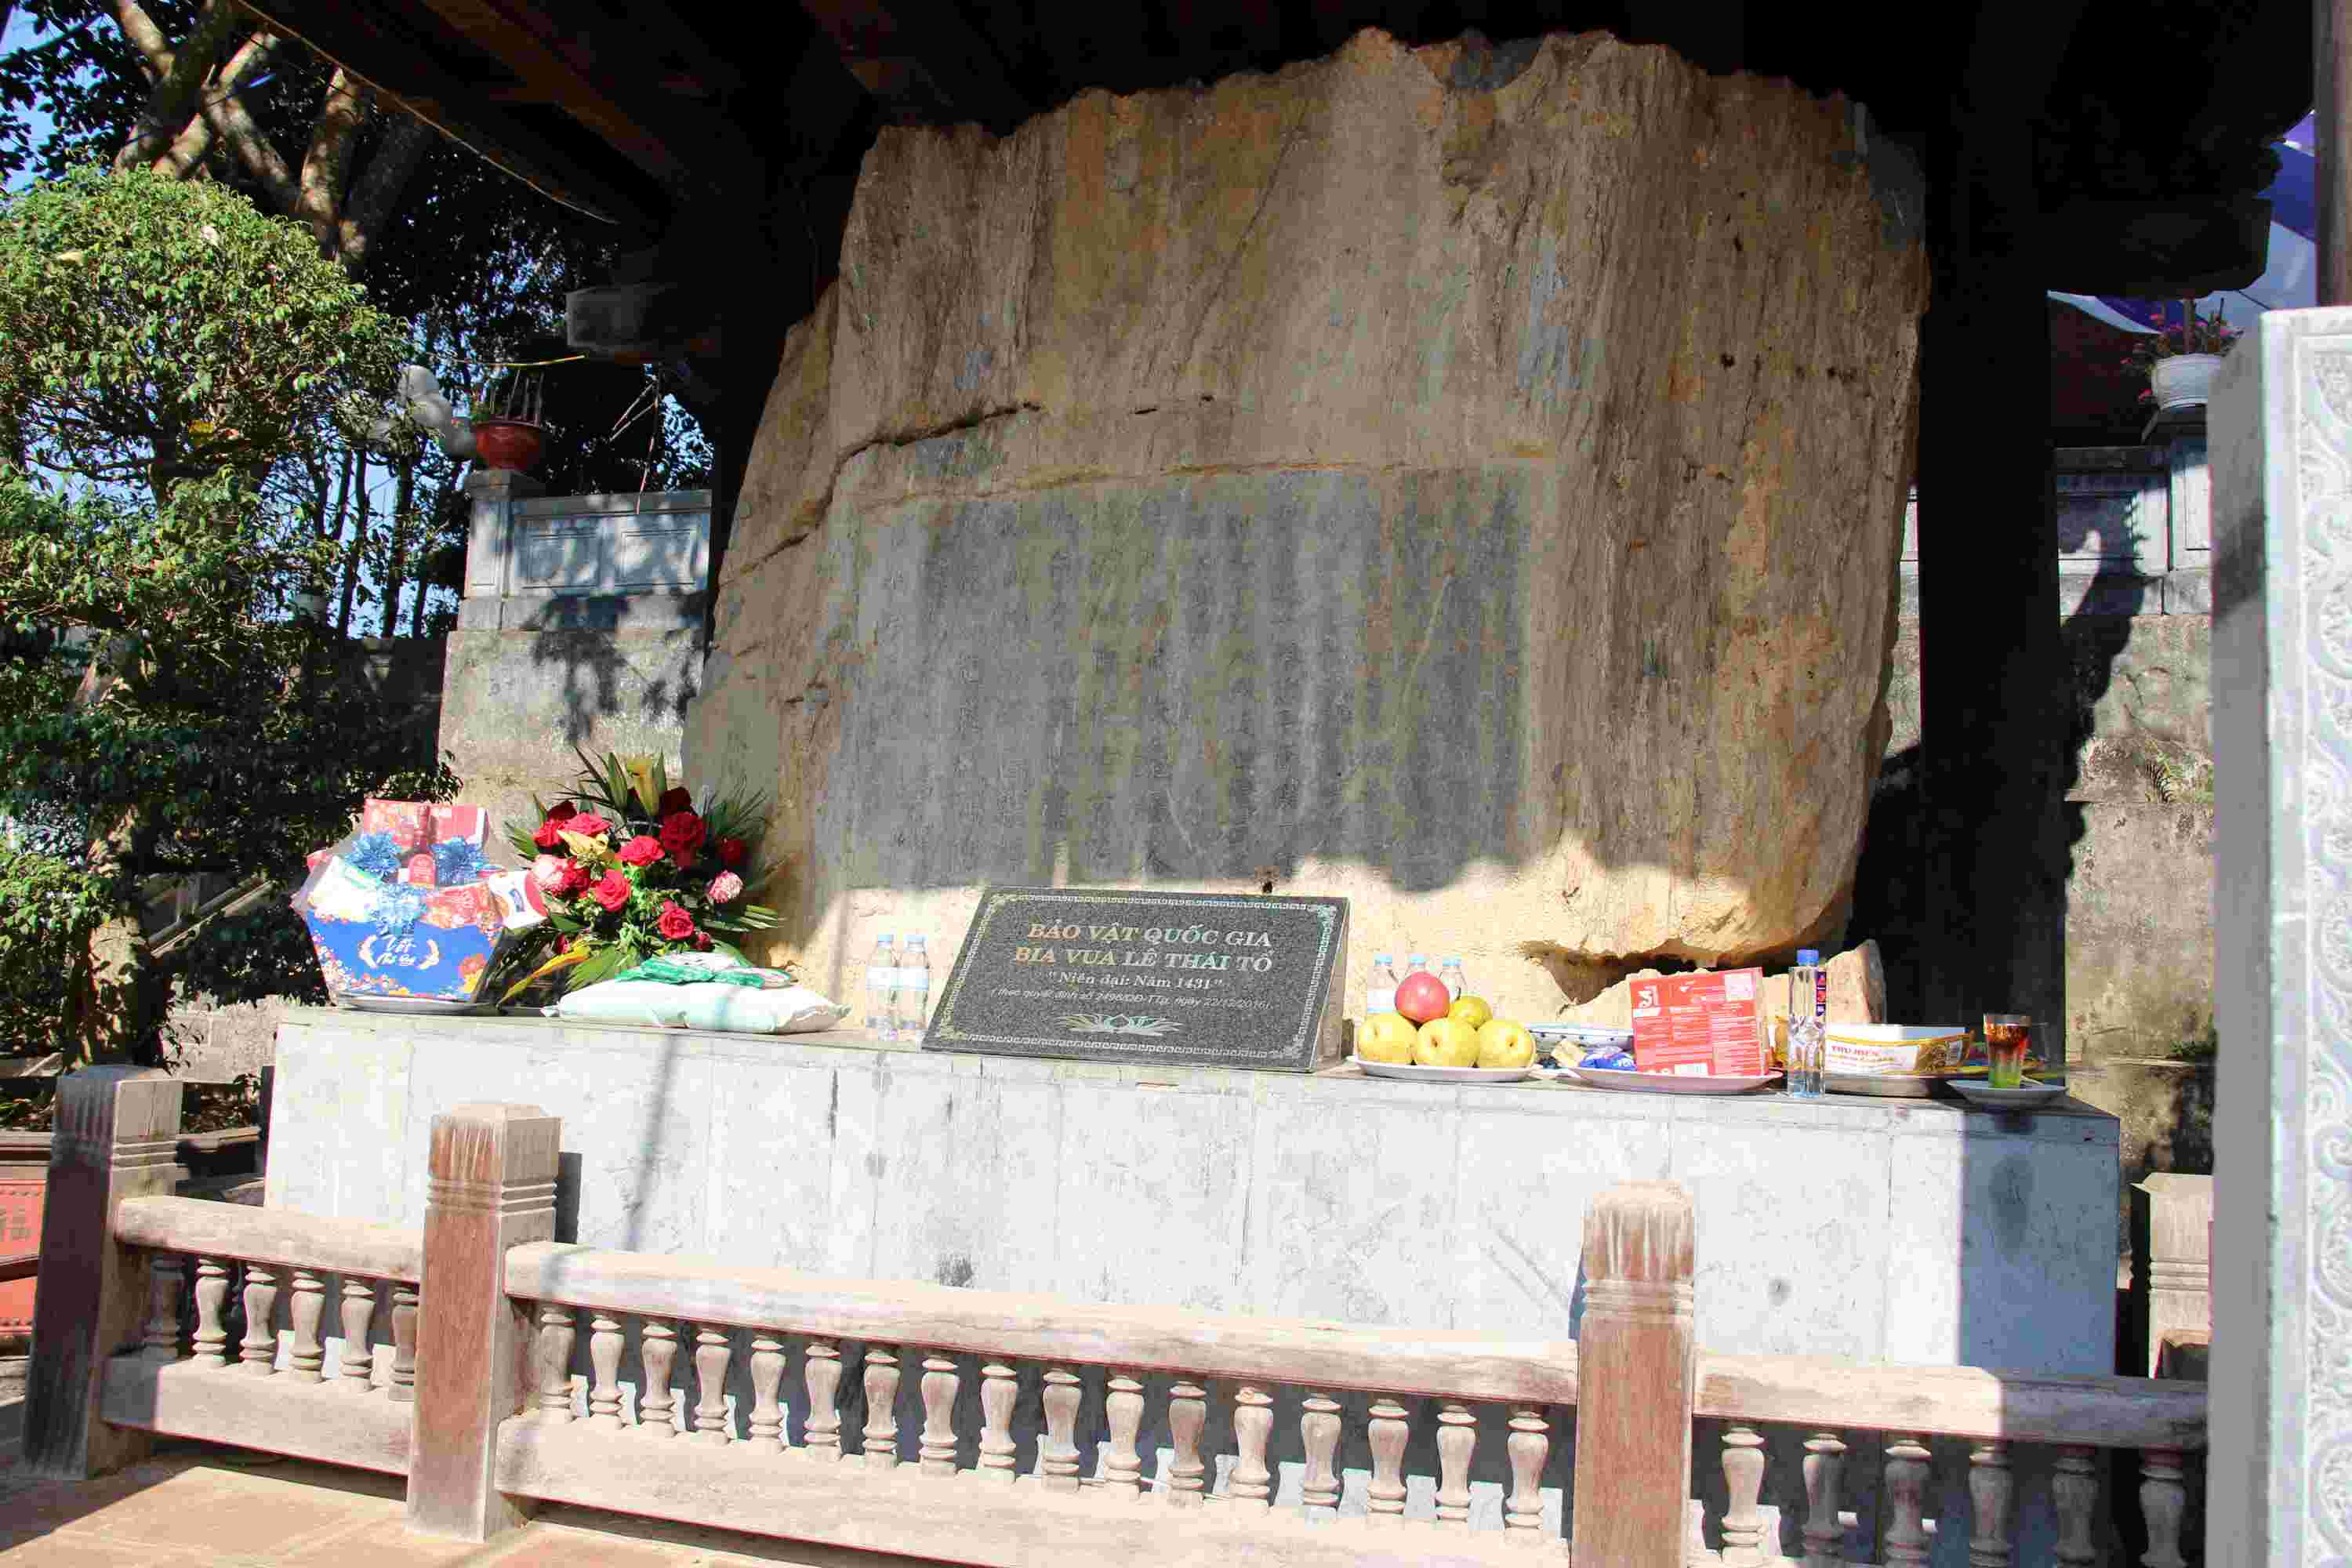 Bảo vật quốc gia Bia cổ Hoài Lai tại Đền thờ Vua Lê Lợi (Vua Lê Thái Tổ).